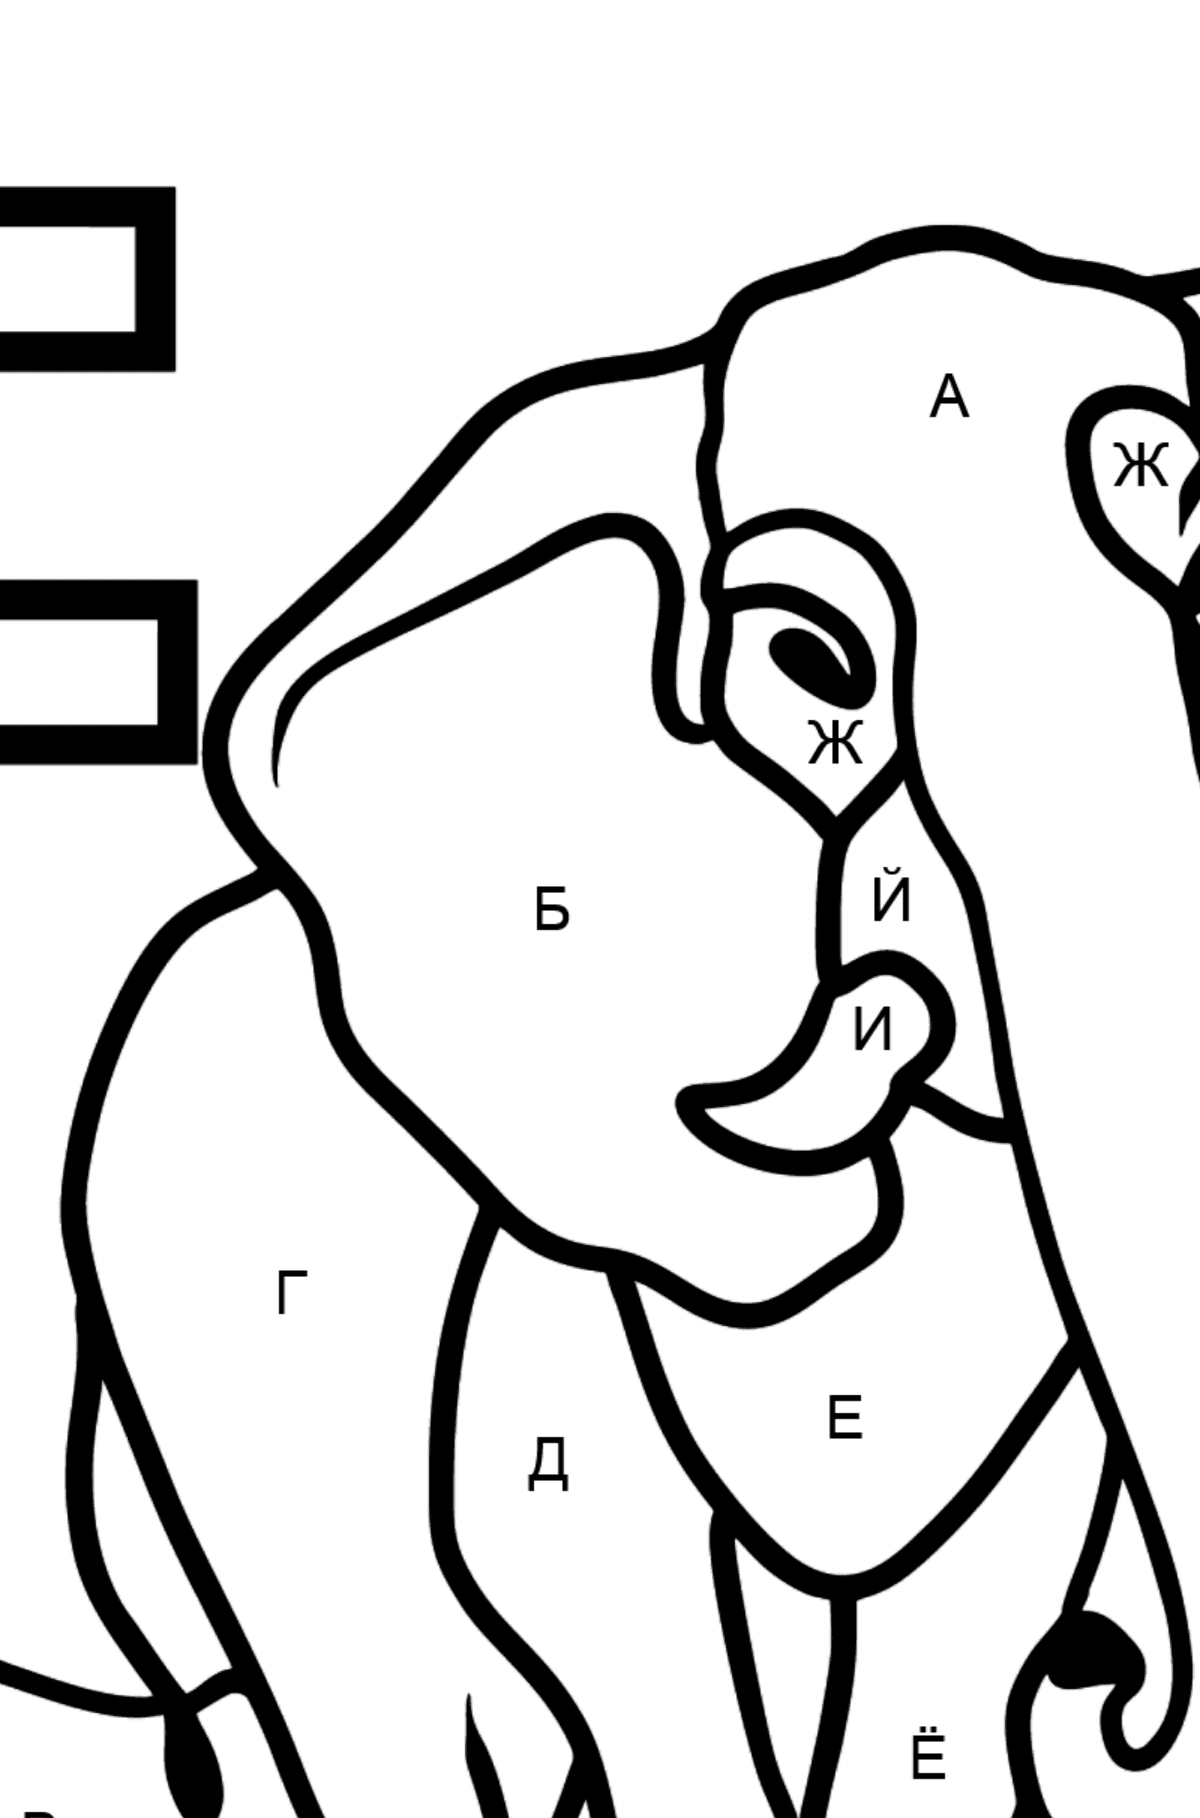 Раскраска Буква E - португальский алфавит - ELEFANTE - По Буквам для Детей